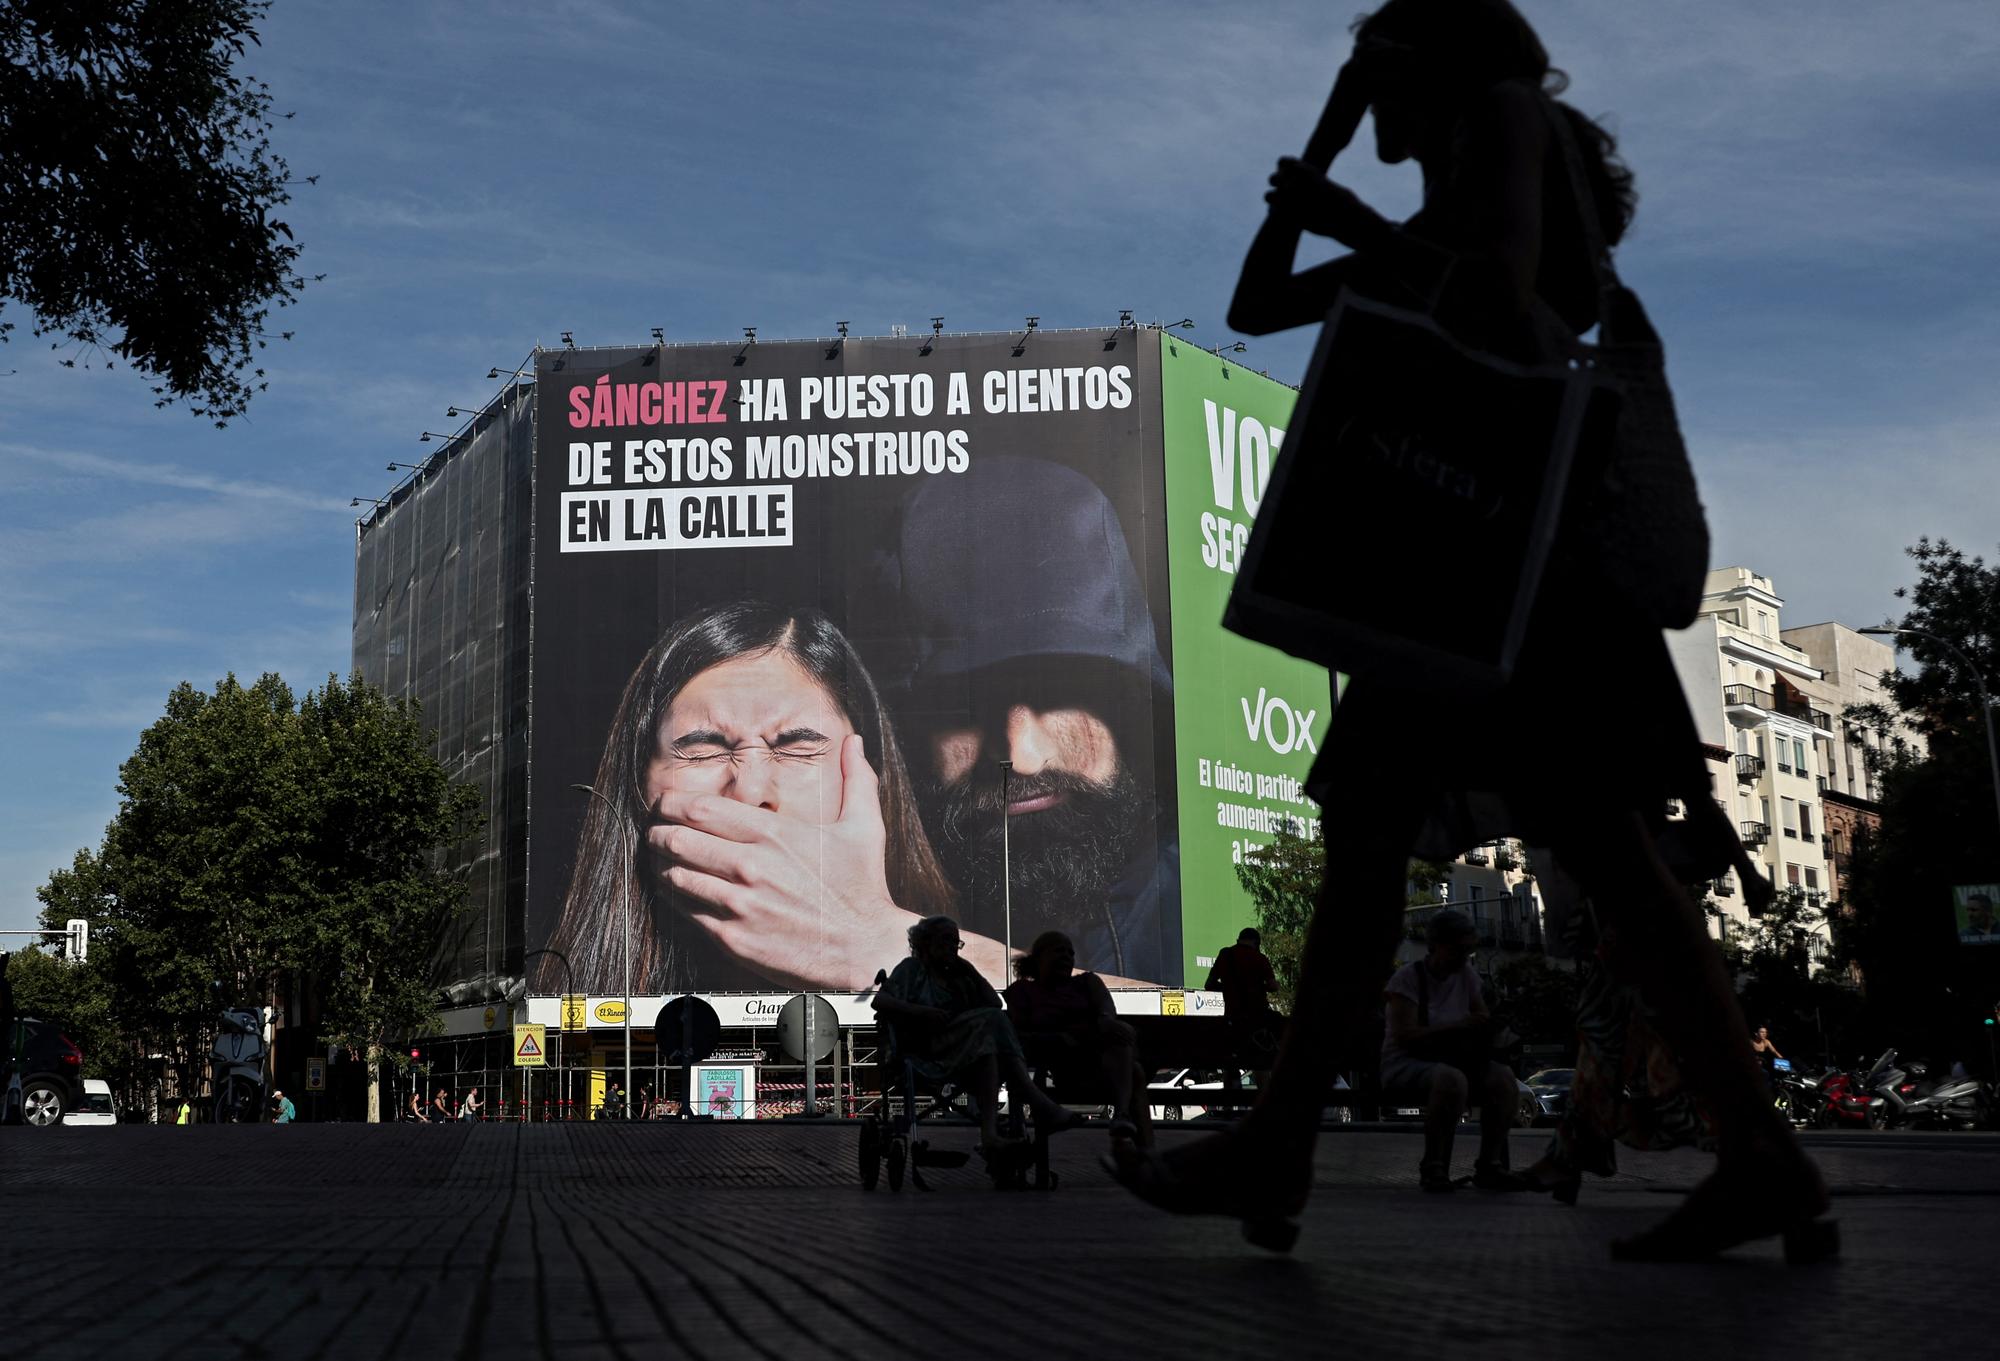 Le parti d'extrême droite Vox a déployé, en plein centre de Madrid, une immense affiche affirmant que "Sánchez a relâché des centaines de monstres dans la rue". [AFP - THOMAS COEX]